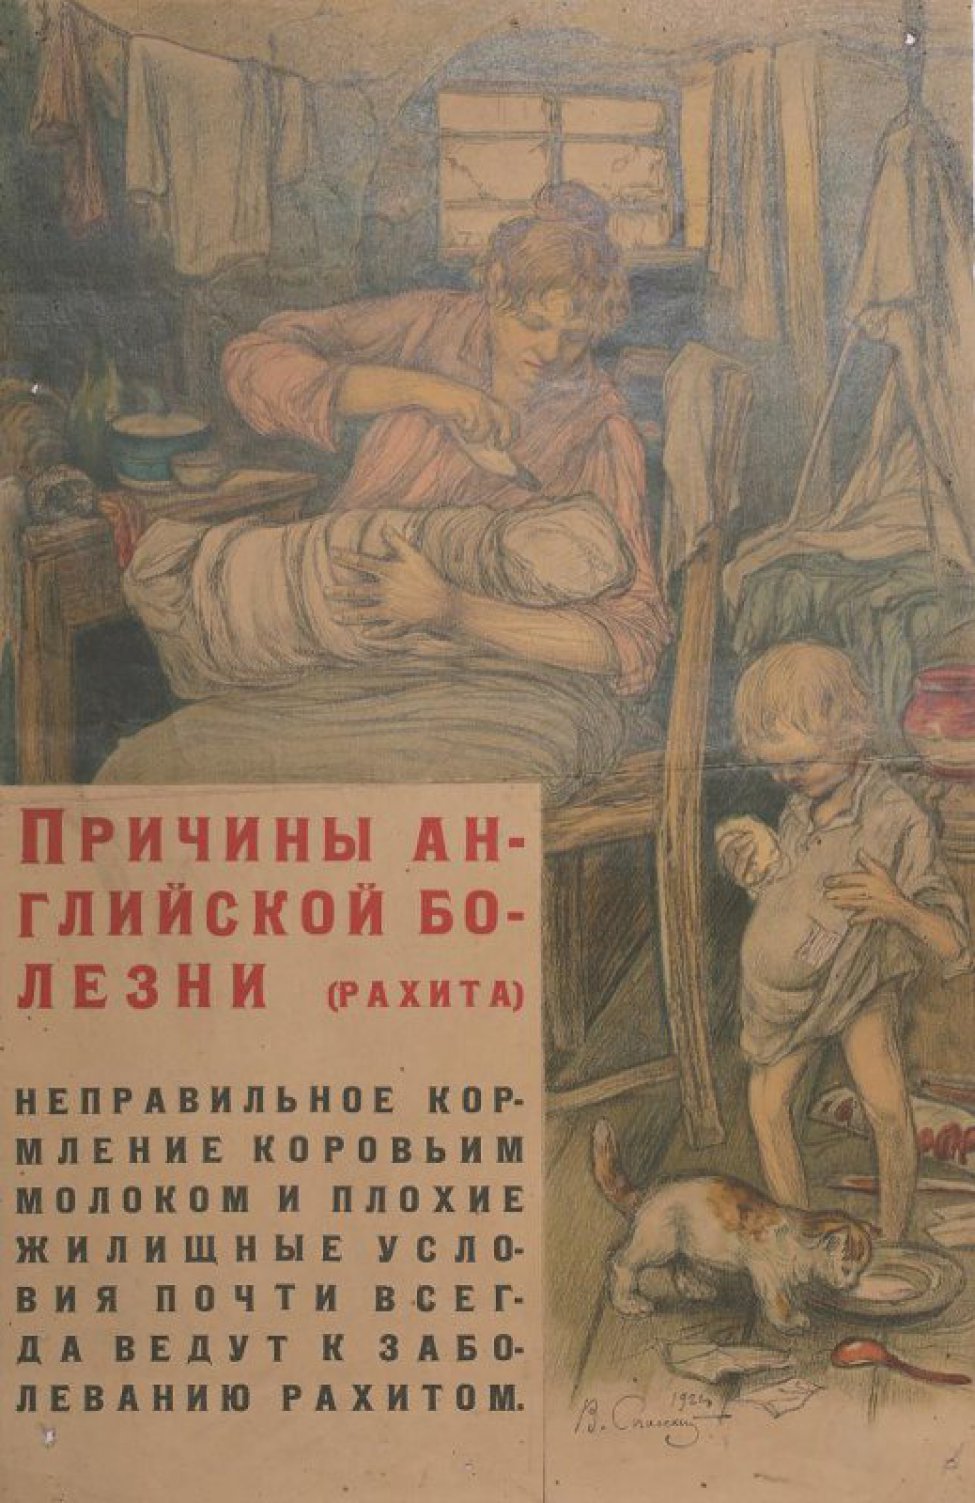 Изображена сидящая женщина кормящая из рожка ребенка. Рядом стоит другой ребенок с большой головой, животом и кривыми ногами. Слева внизу текст: Неправильное... рахитом".